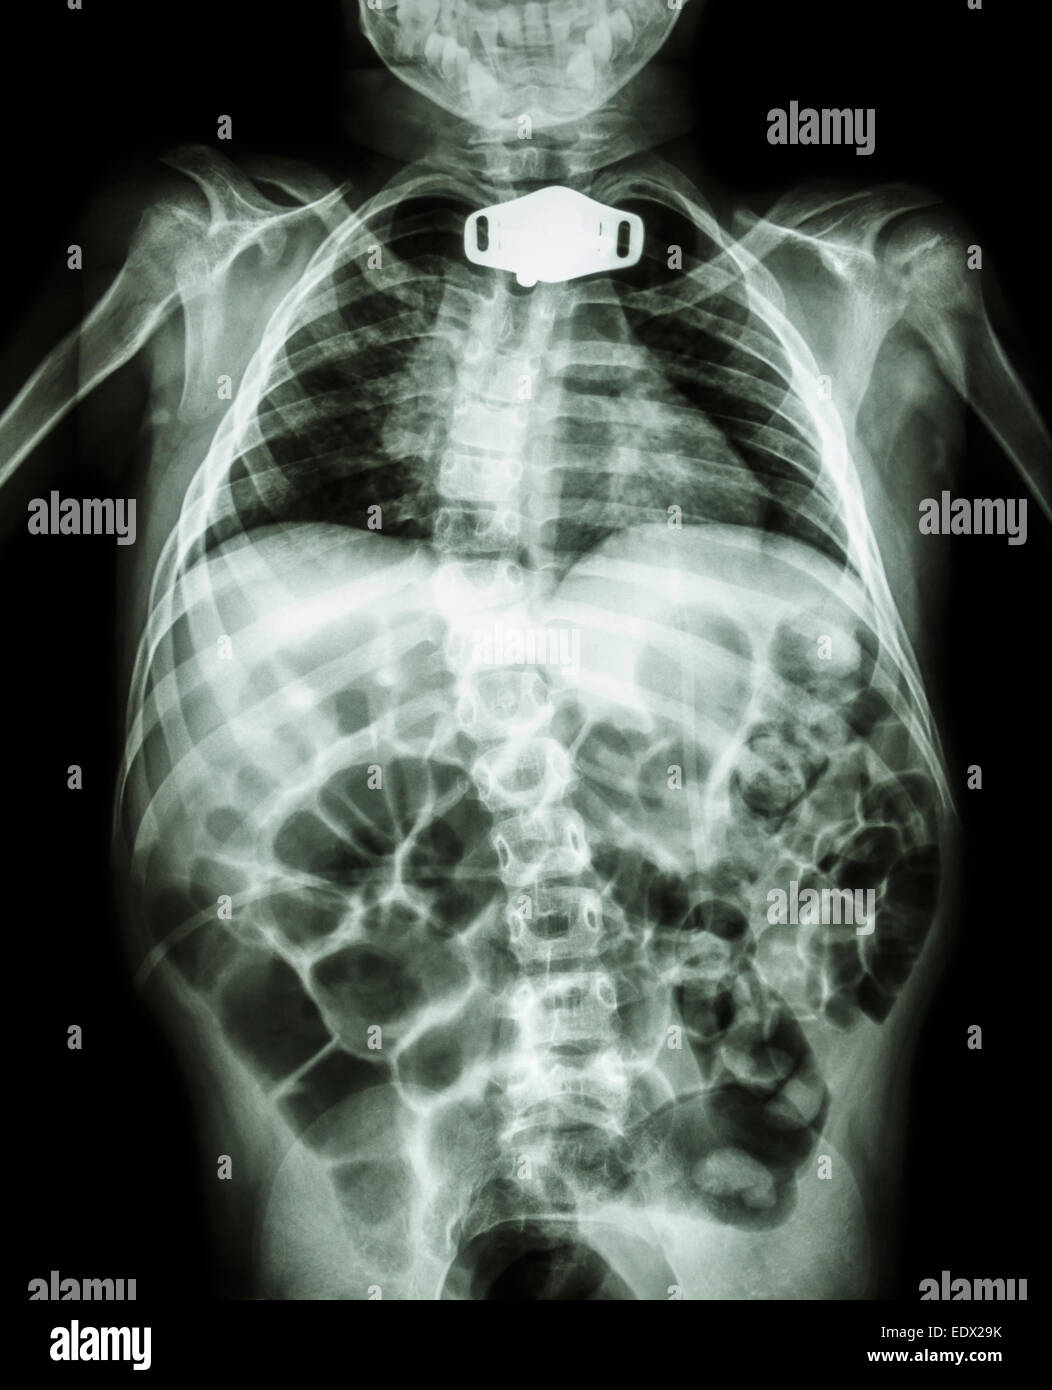 X-ray Körper von Kind und Tracheostoma Rohr im Halsbereich aufgrund respiratorischer Insuffizienz Stockfoto